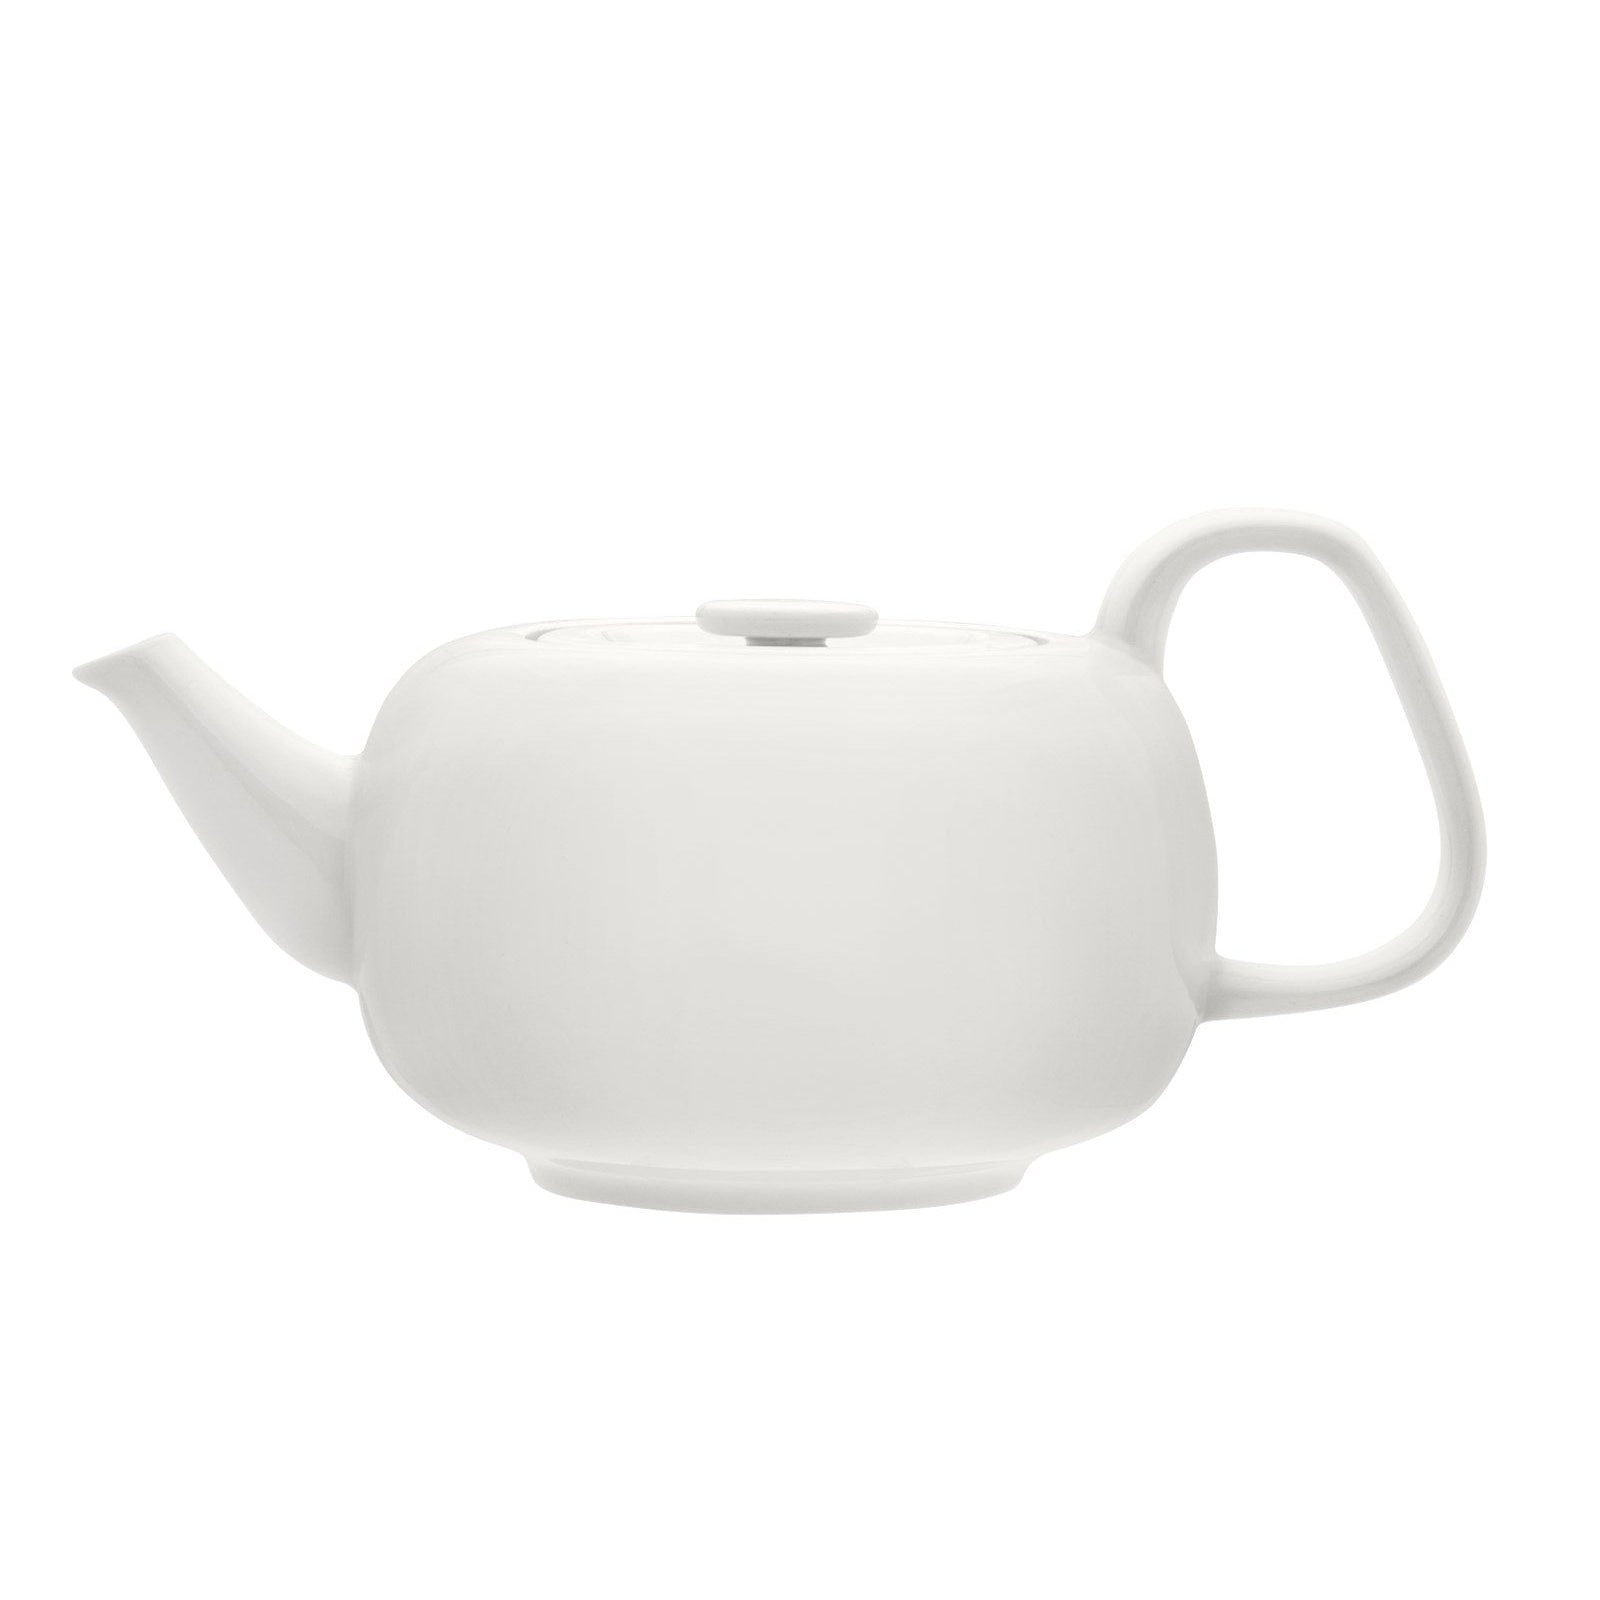 Iittala raami teapot bianco, 1,1 l